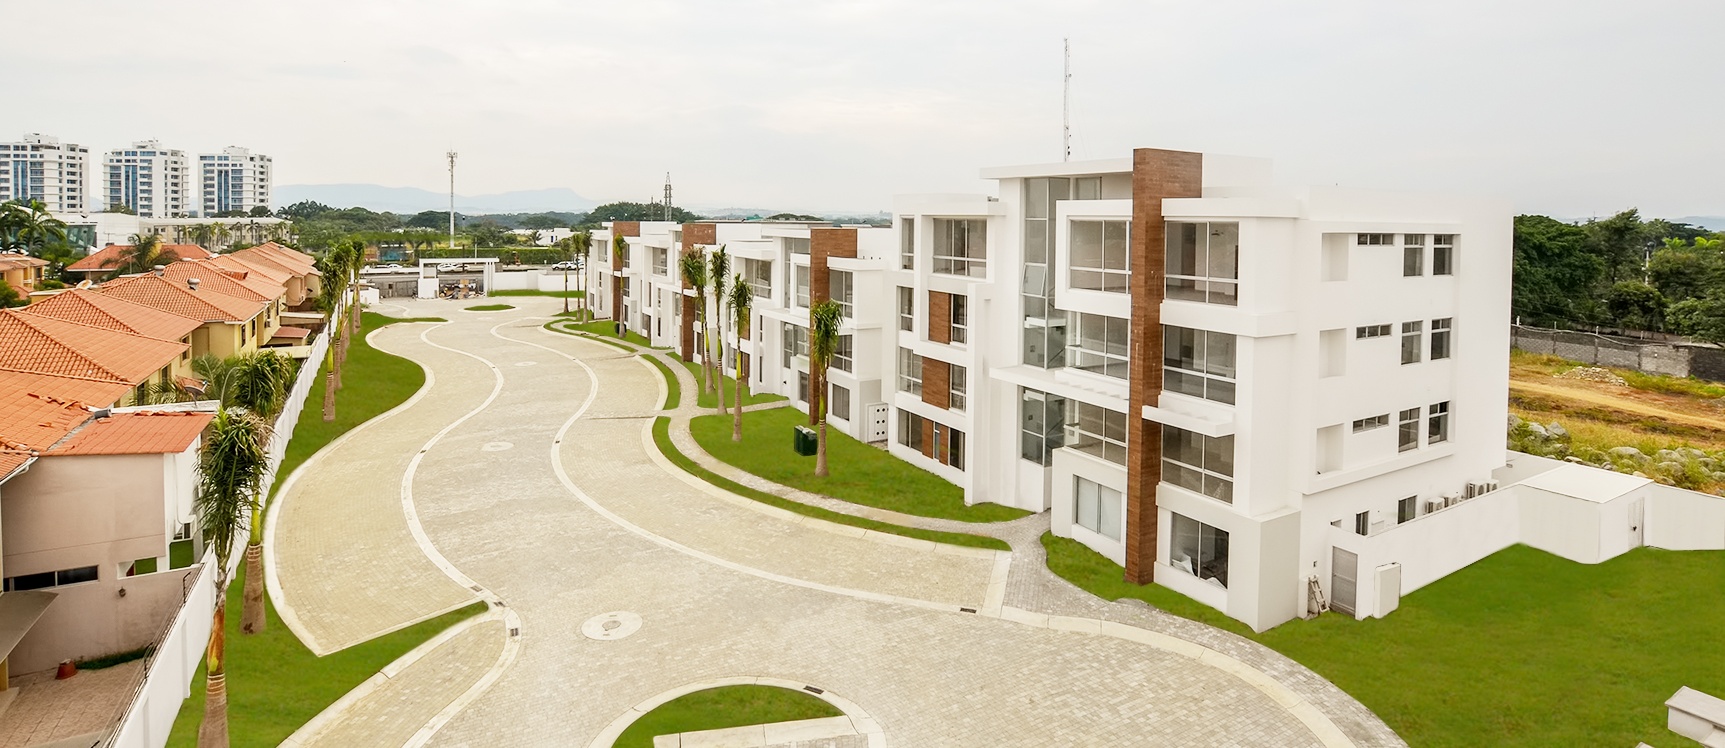 GeoBienes - Departamento a estrenar en venta sector Samborondón - Plusvalia Guayaquil Casas de venta y alquiler Inmobiliaria Ecuador